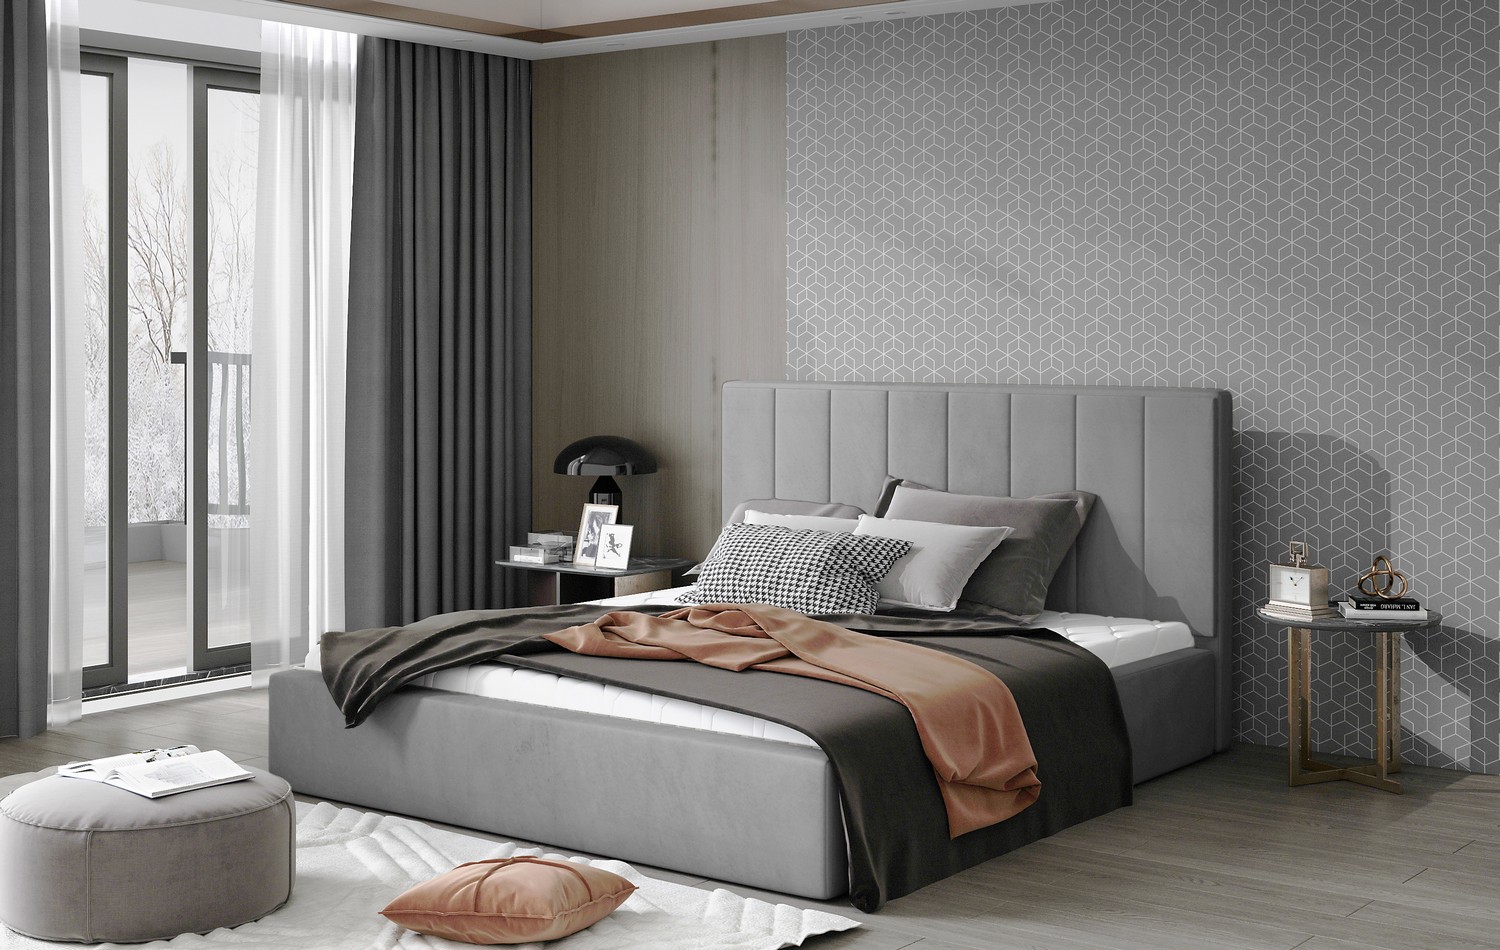 Artelta Manželská postel AUDREY s úložným prostorem | 160 x 200 cm Barva: Hnědá / Dora 28